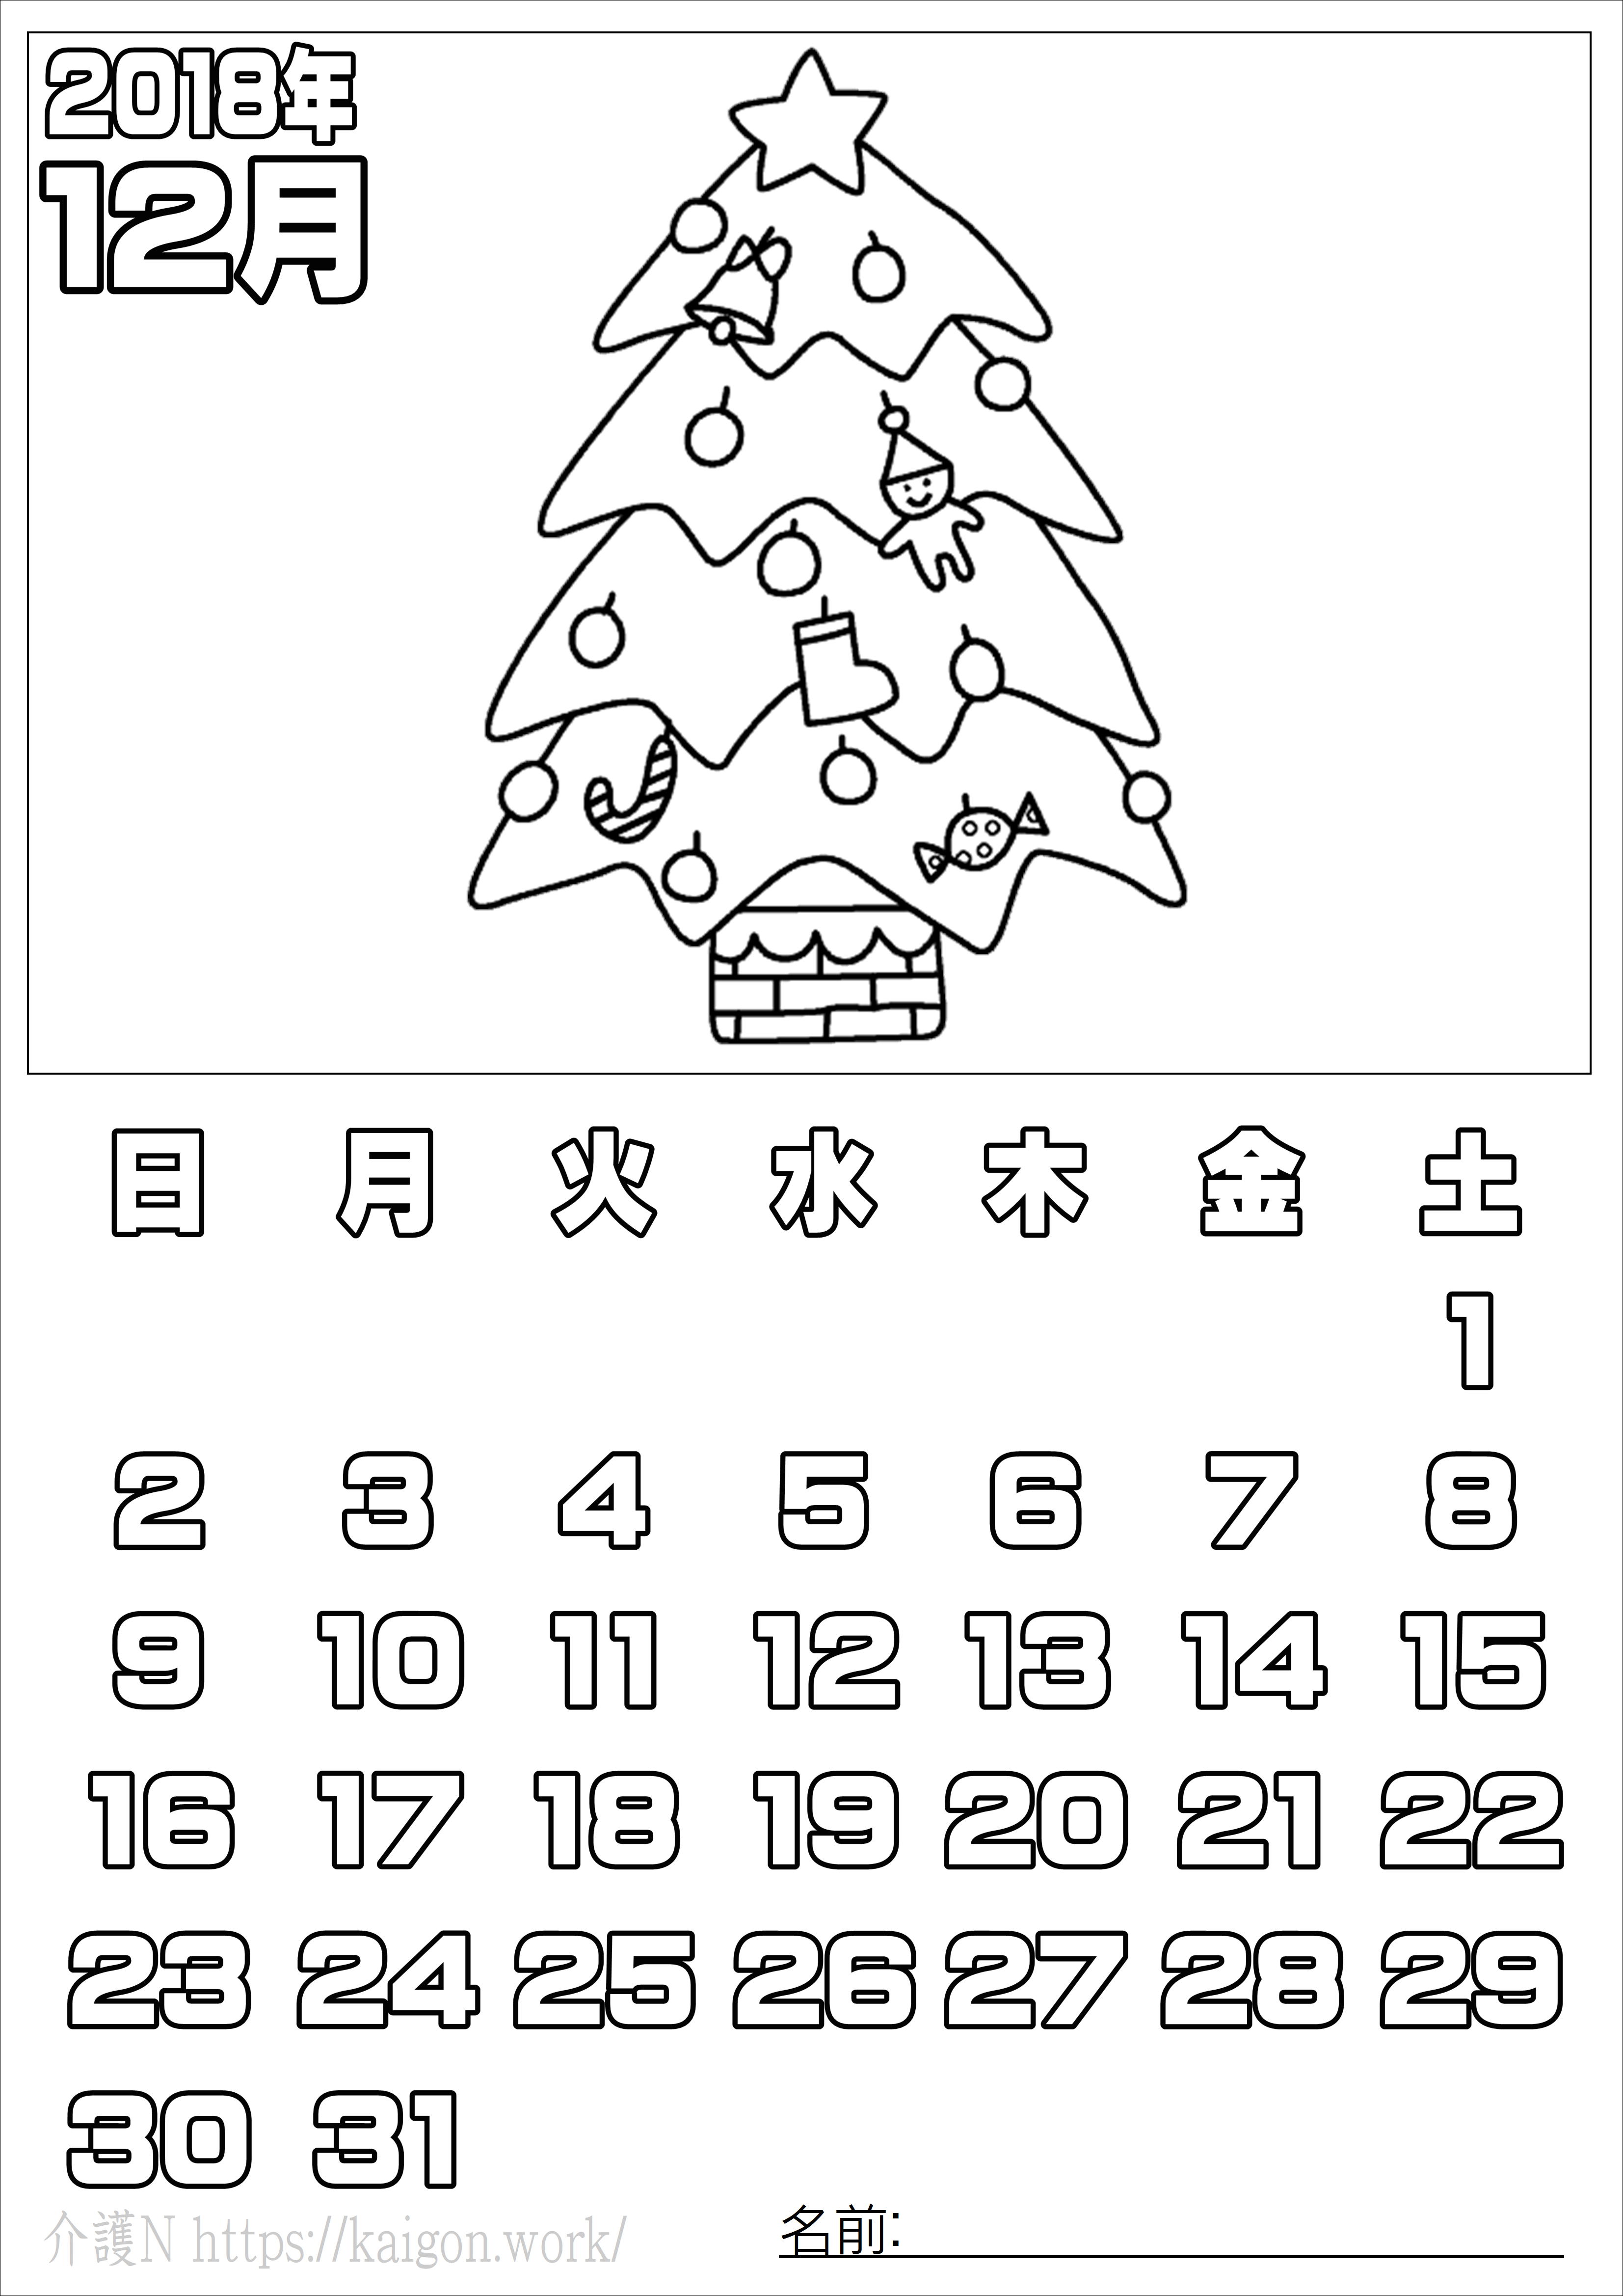 ぬり絵 カレンダー12月 18年 無料 介護n 認知症予防に脳トレ素材